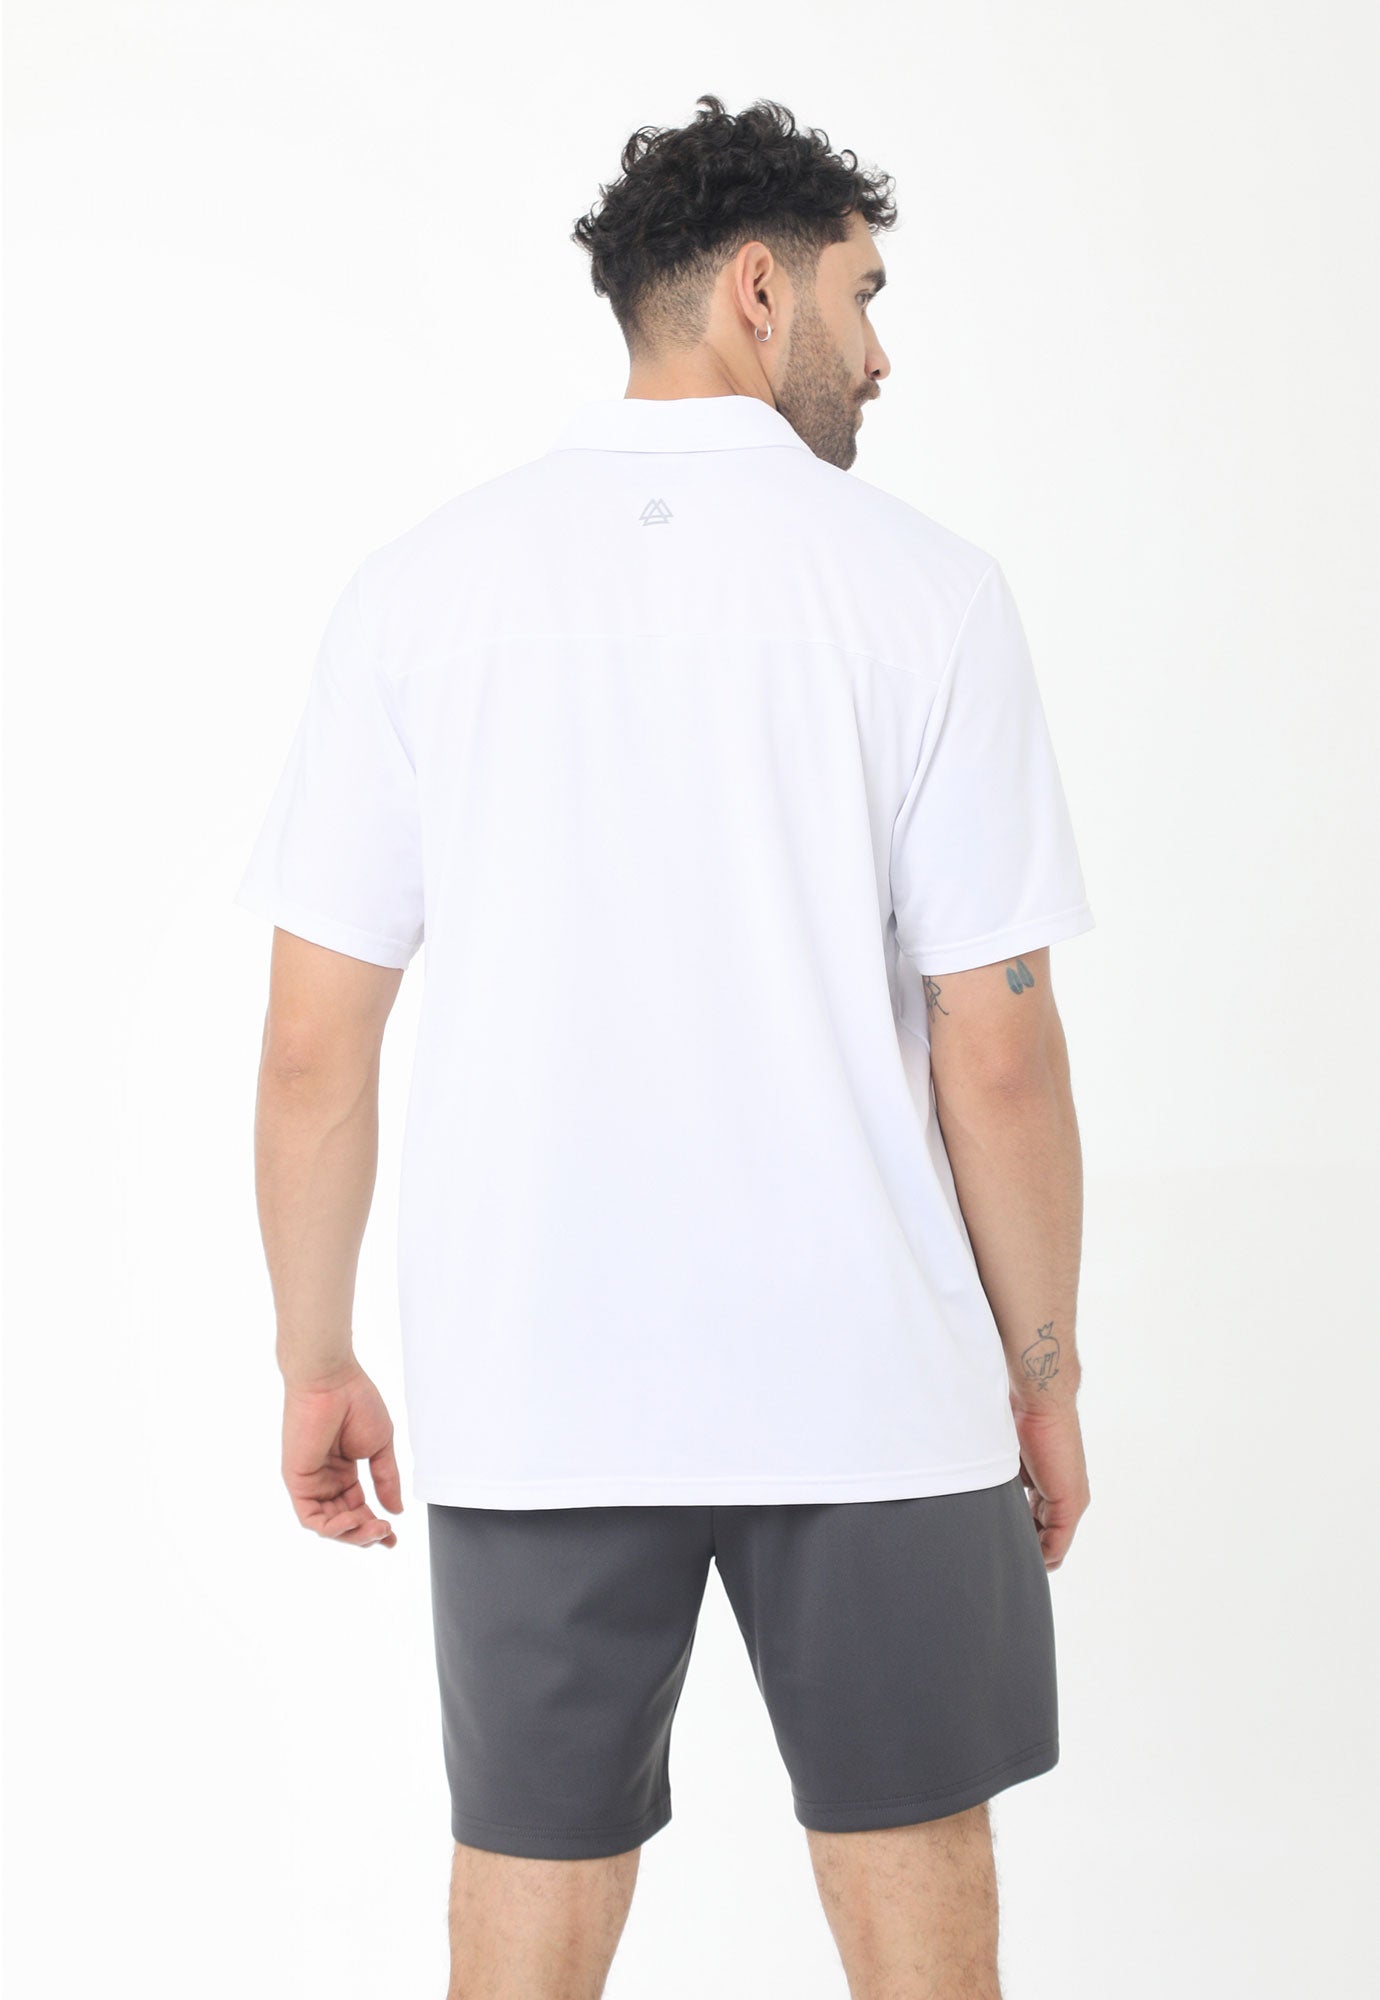 Camiseta polo deportiva blanca con perilla interna y almilla en tela contraste para hombre